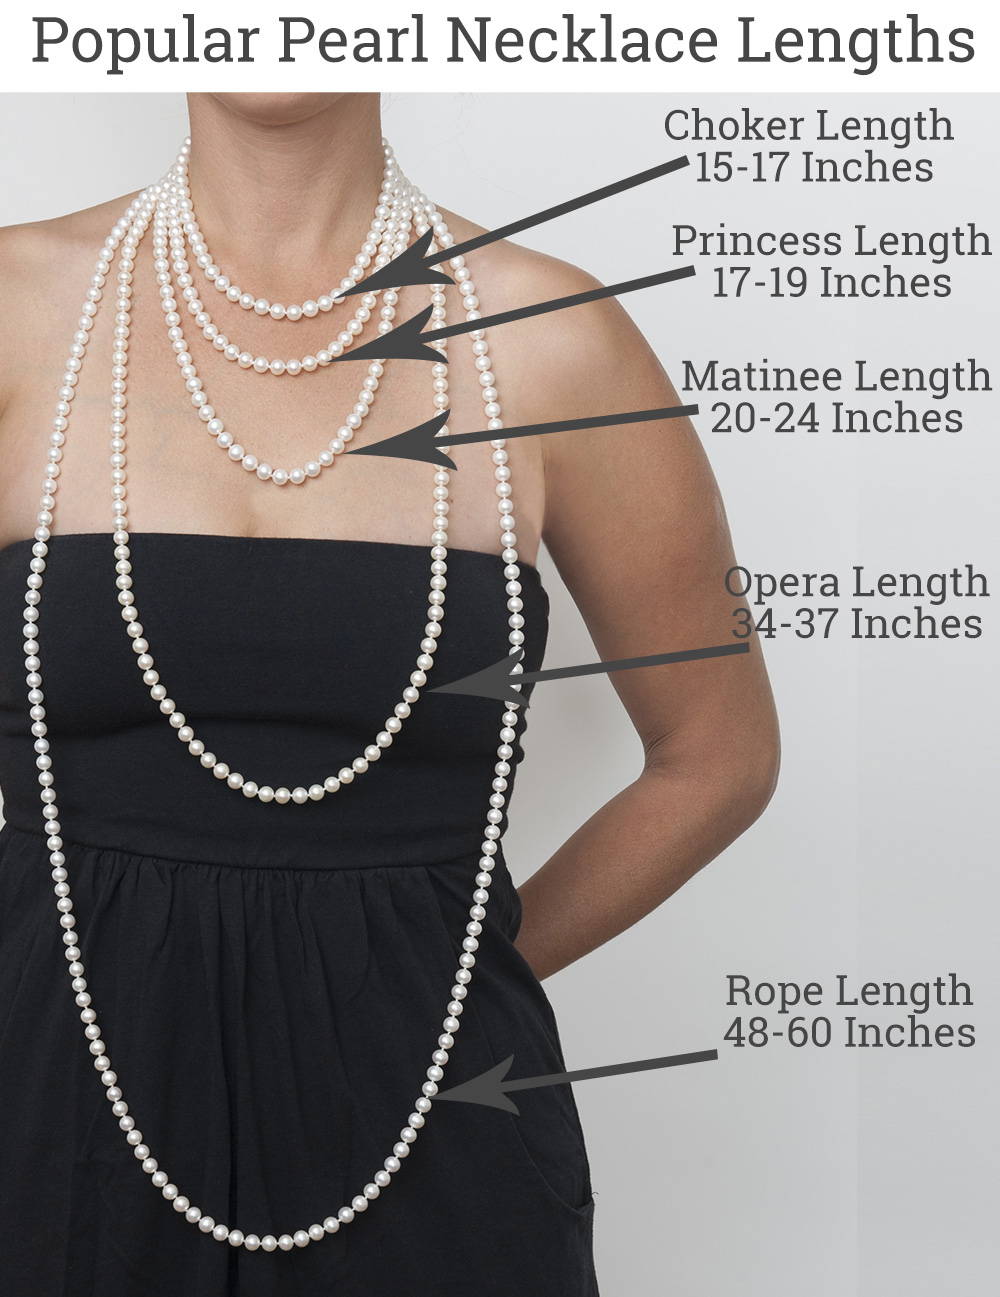 Necklace Length Measurements